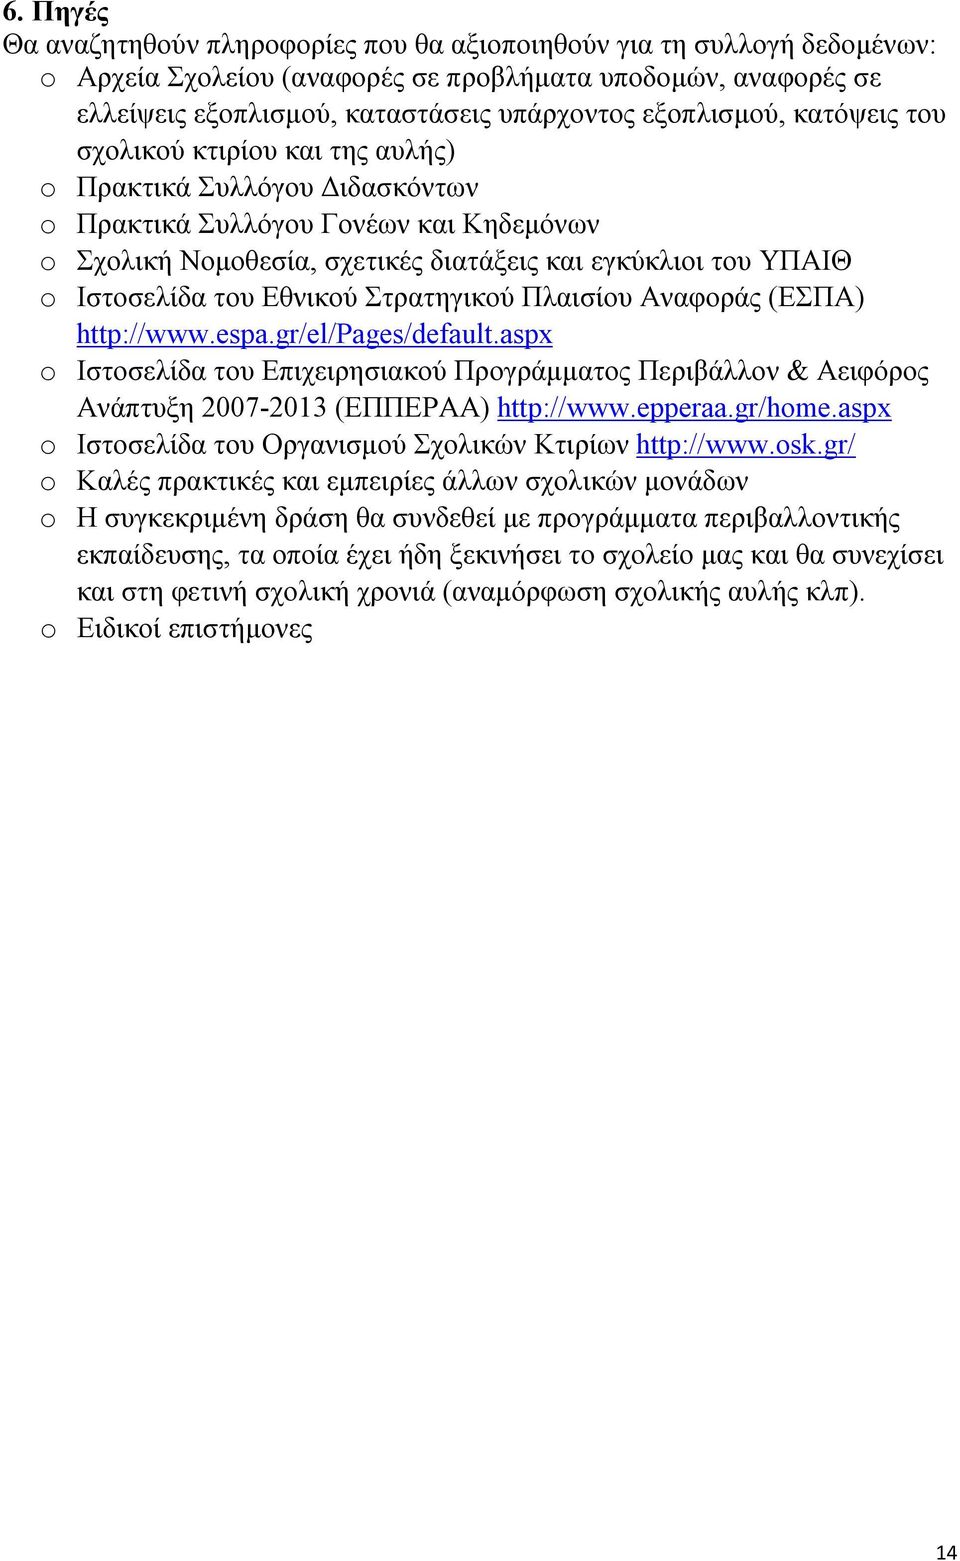 Ιστοσελίδα του Εθνικού Στρατηγικού Πλαισίου Αναφοράς (ΕΣΠΑ) http://www.espa.gr/el/pages/default.